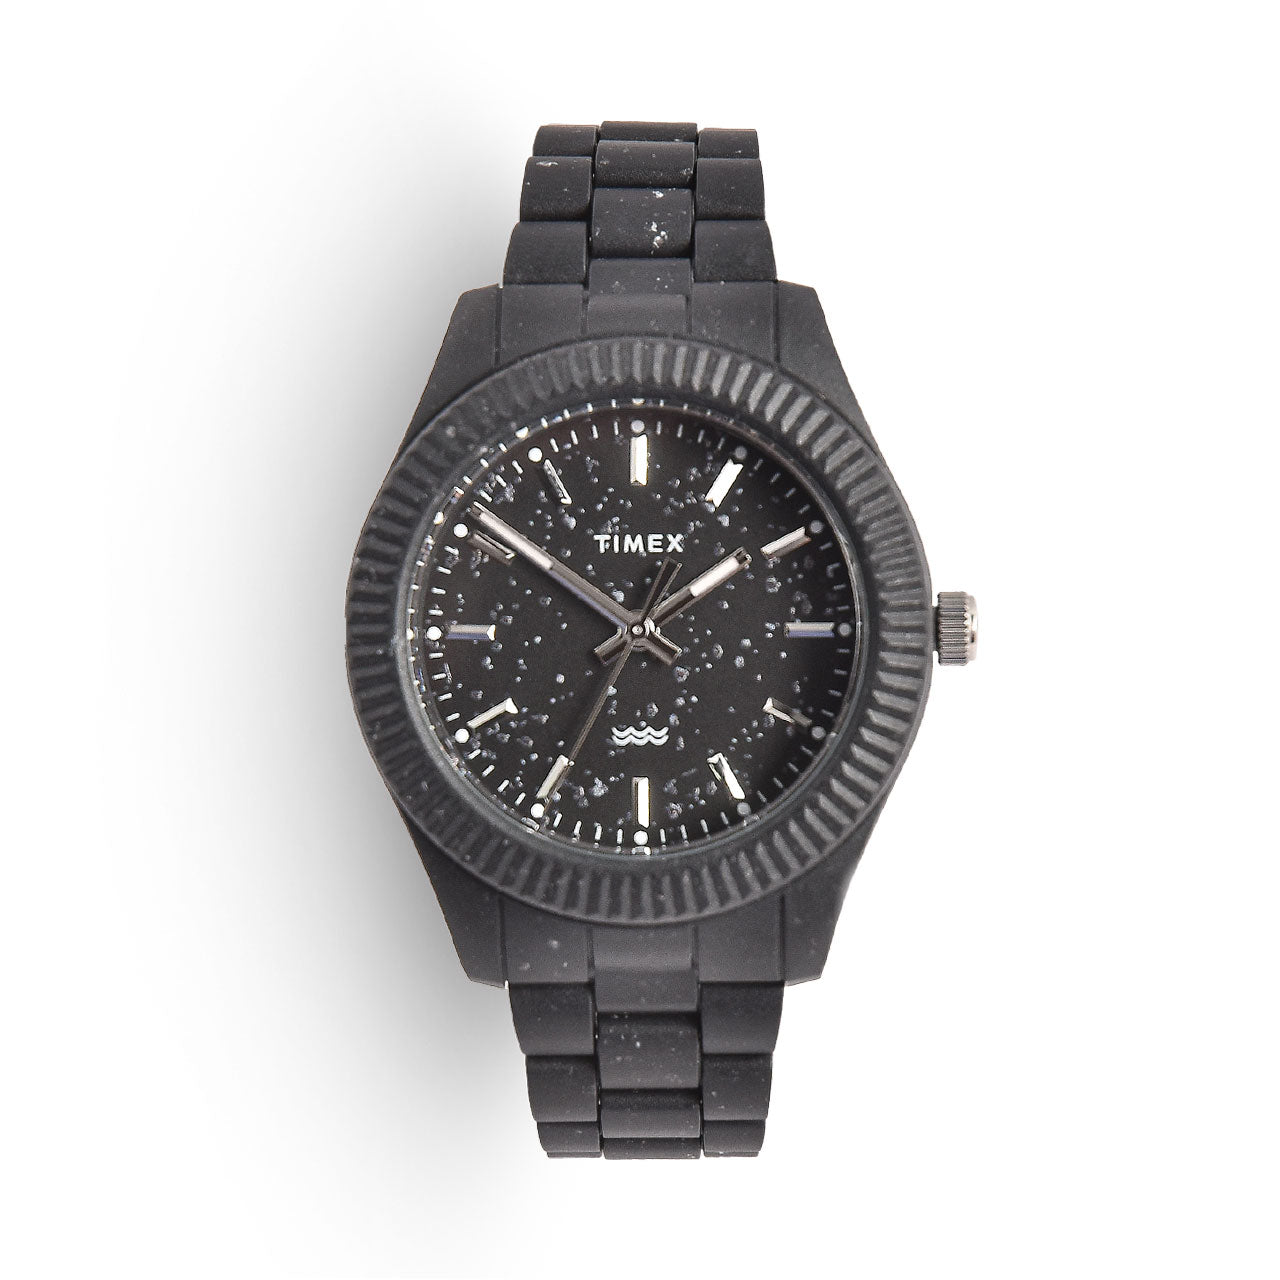 Timex Legacy Ocean Plastic Watch, #Timex #Legacy #Ocean #Plastic #Watch